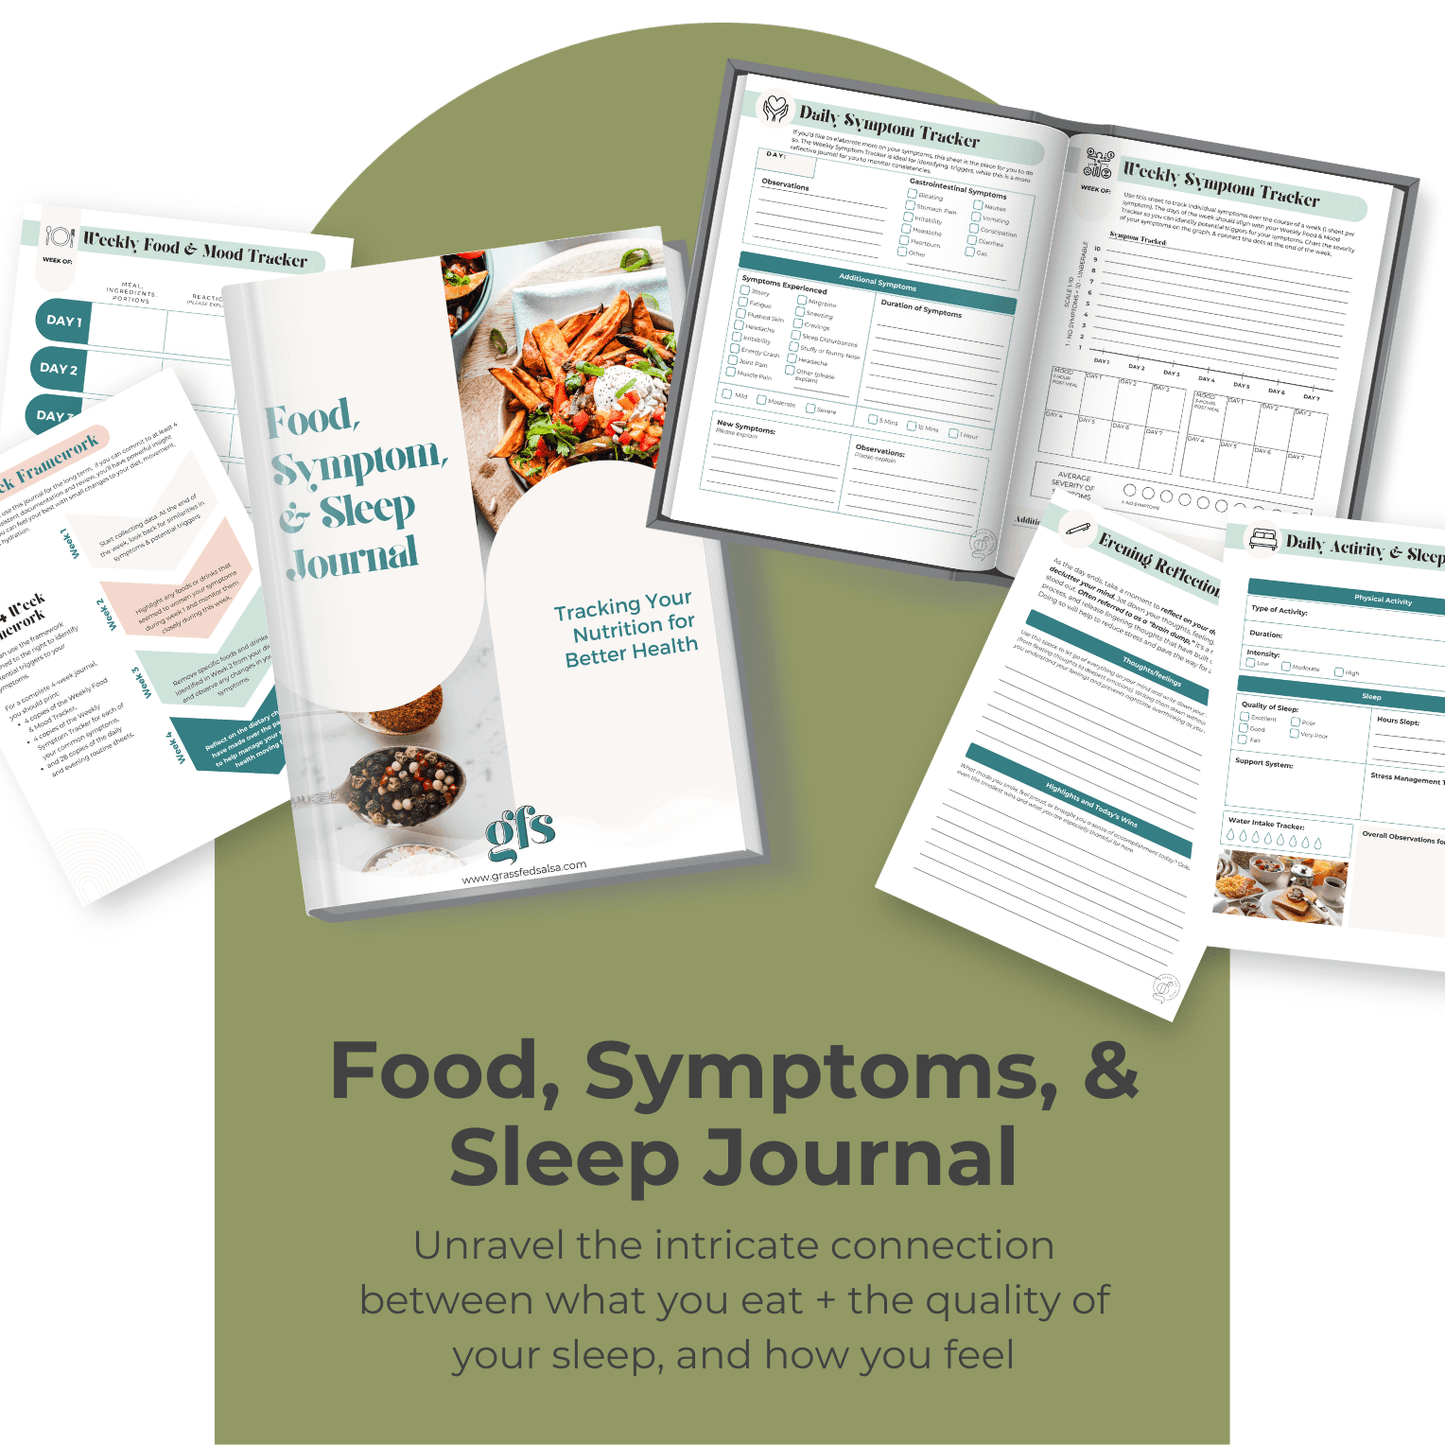 Food, Symptoms, & Sleep Journal